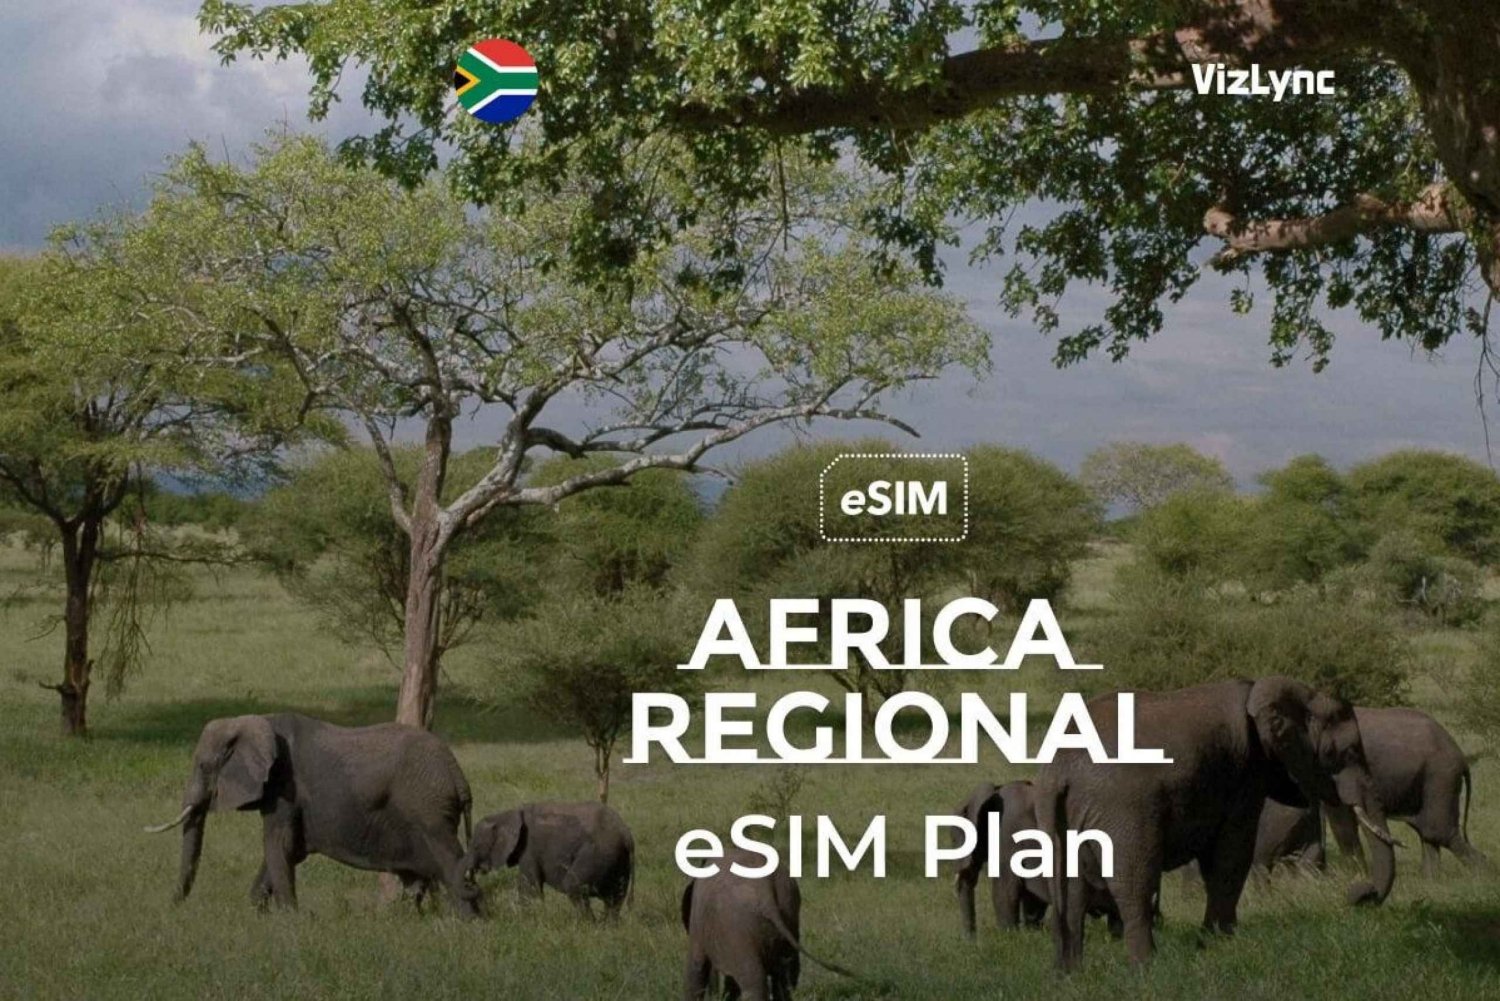 Mejor eSIM de viaje para África con 10 GB de datos durante 30 días'.